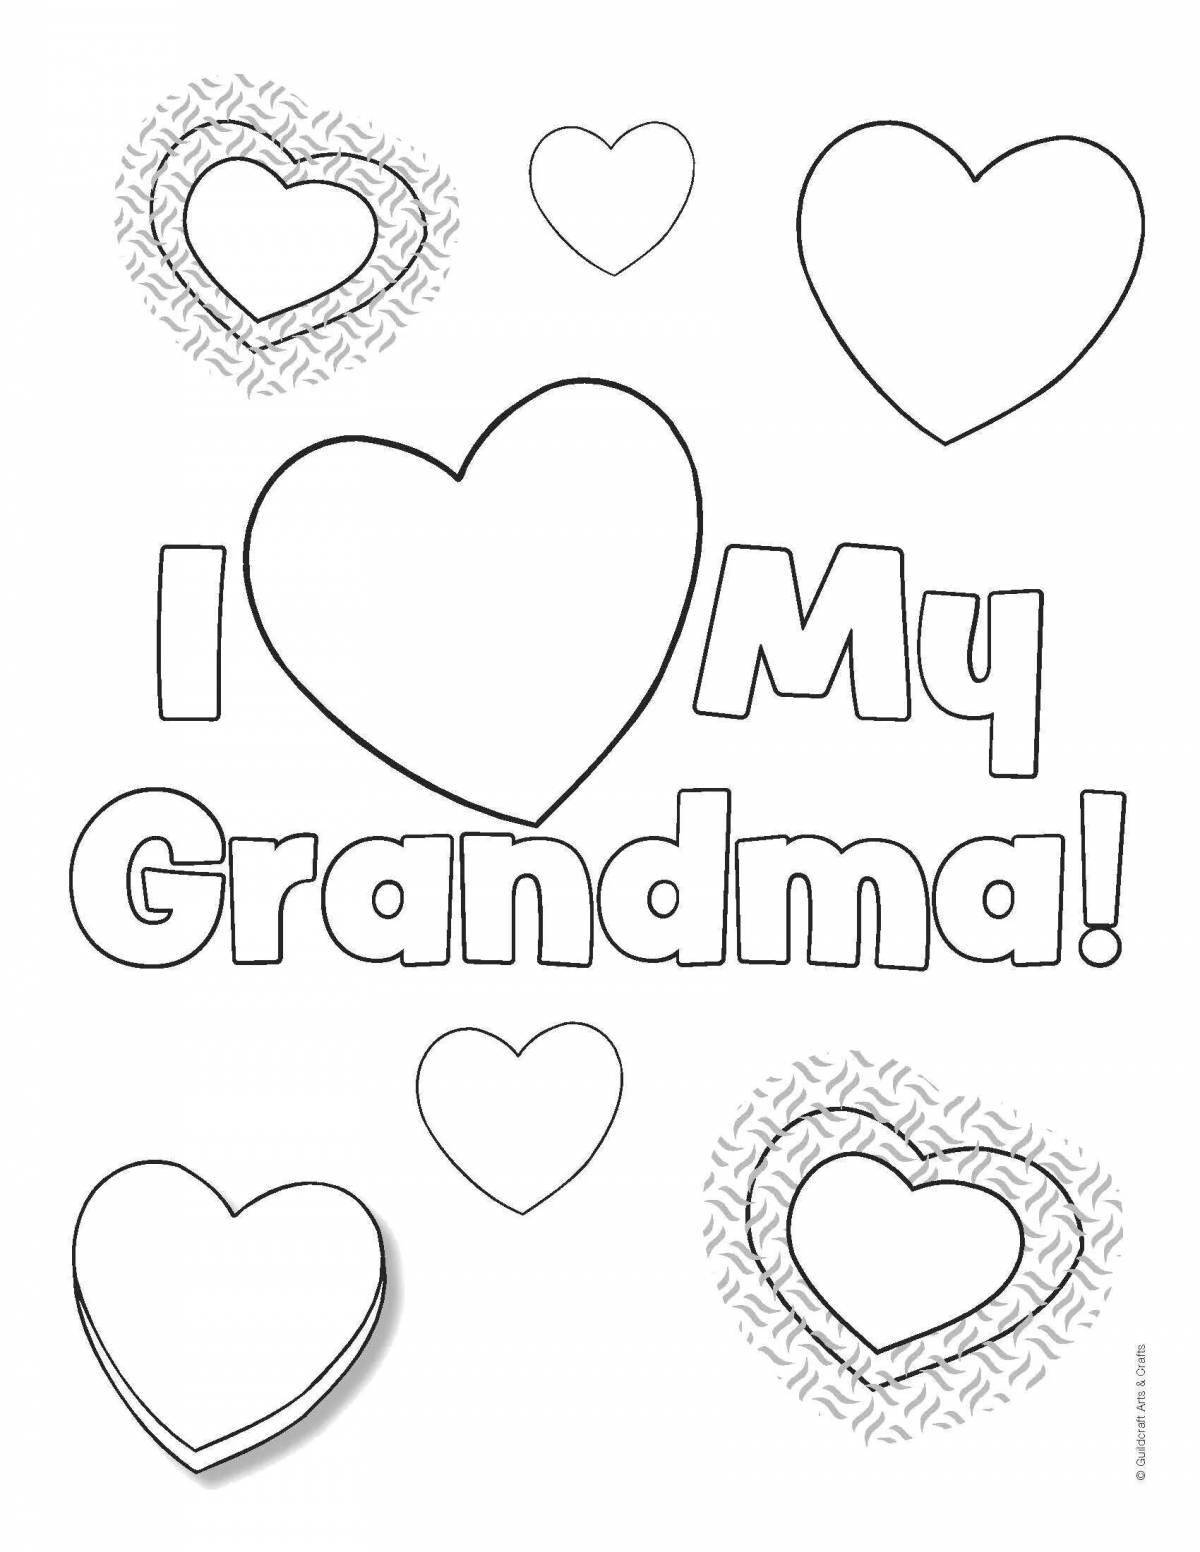 Great coloring card for grandma